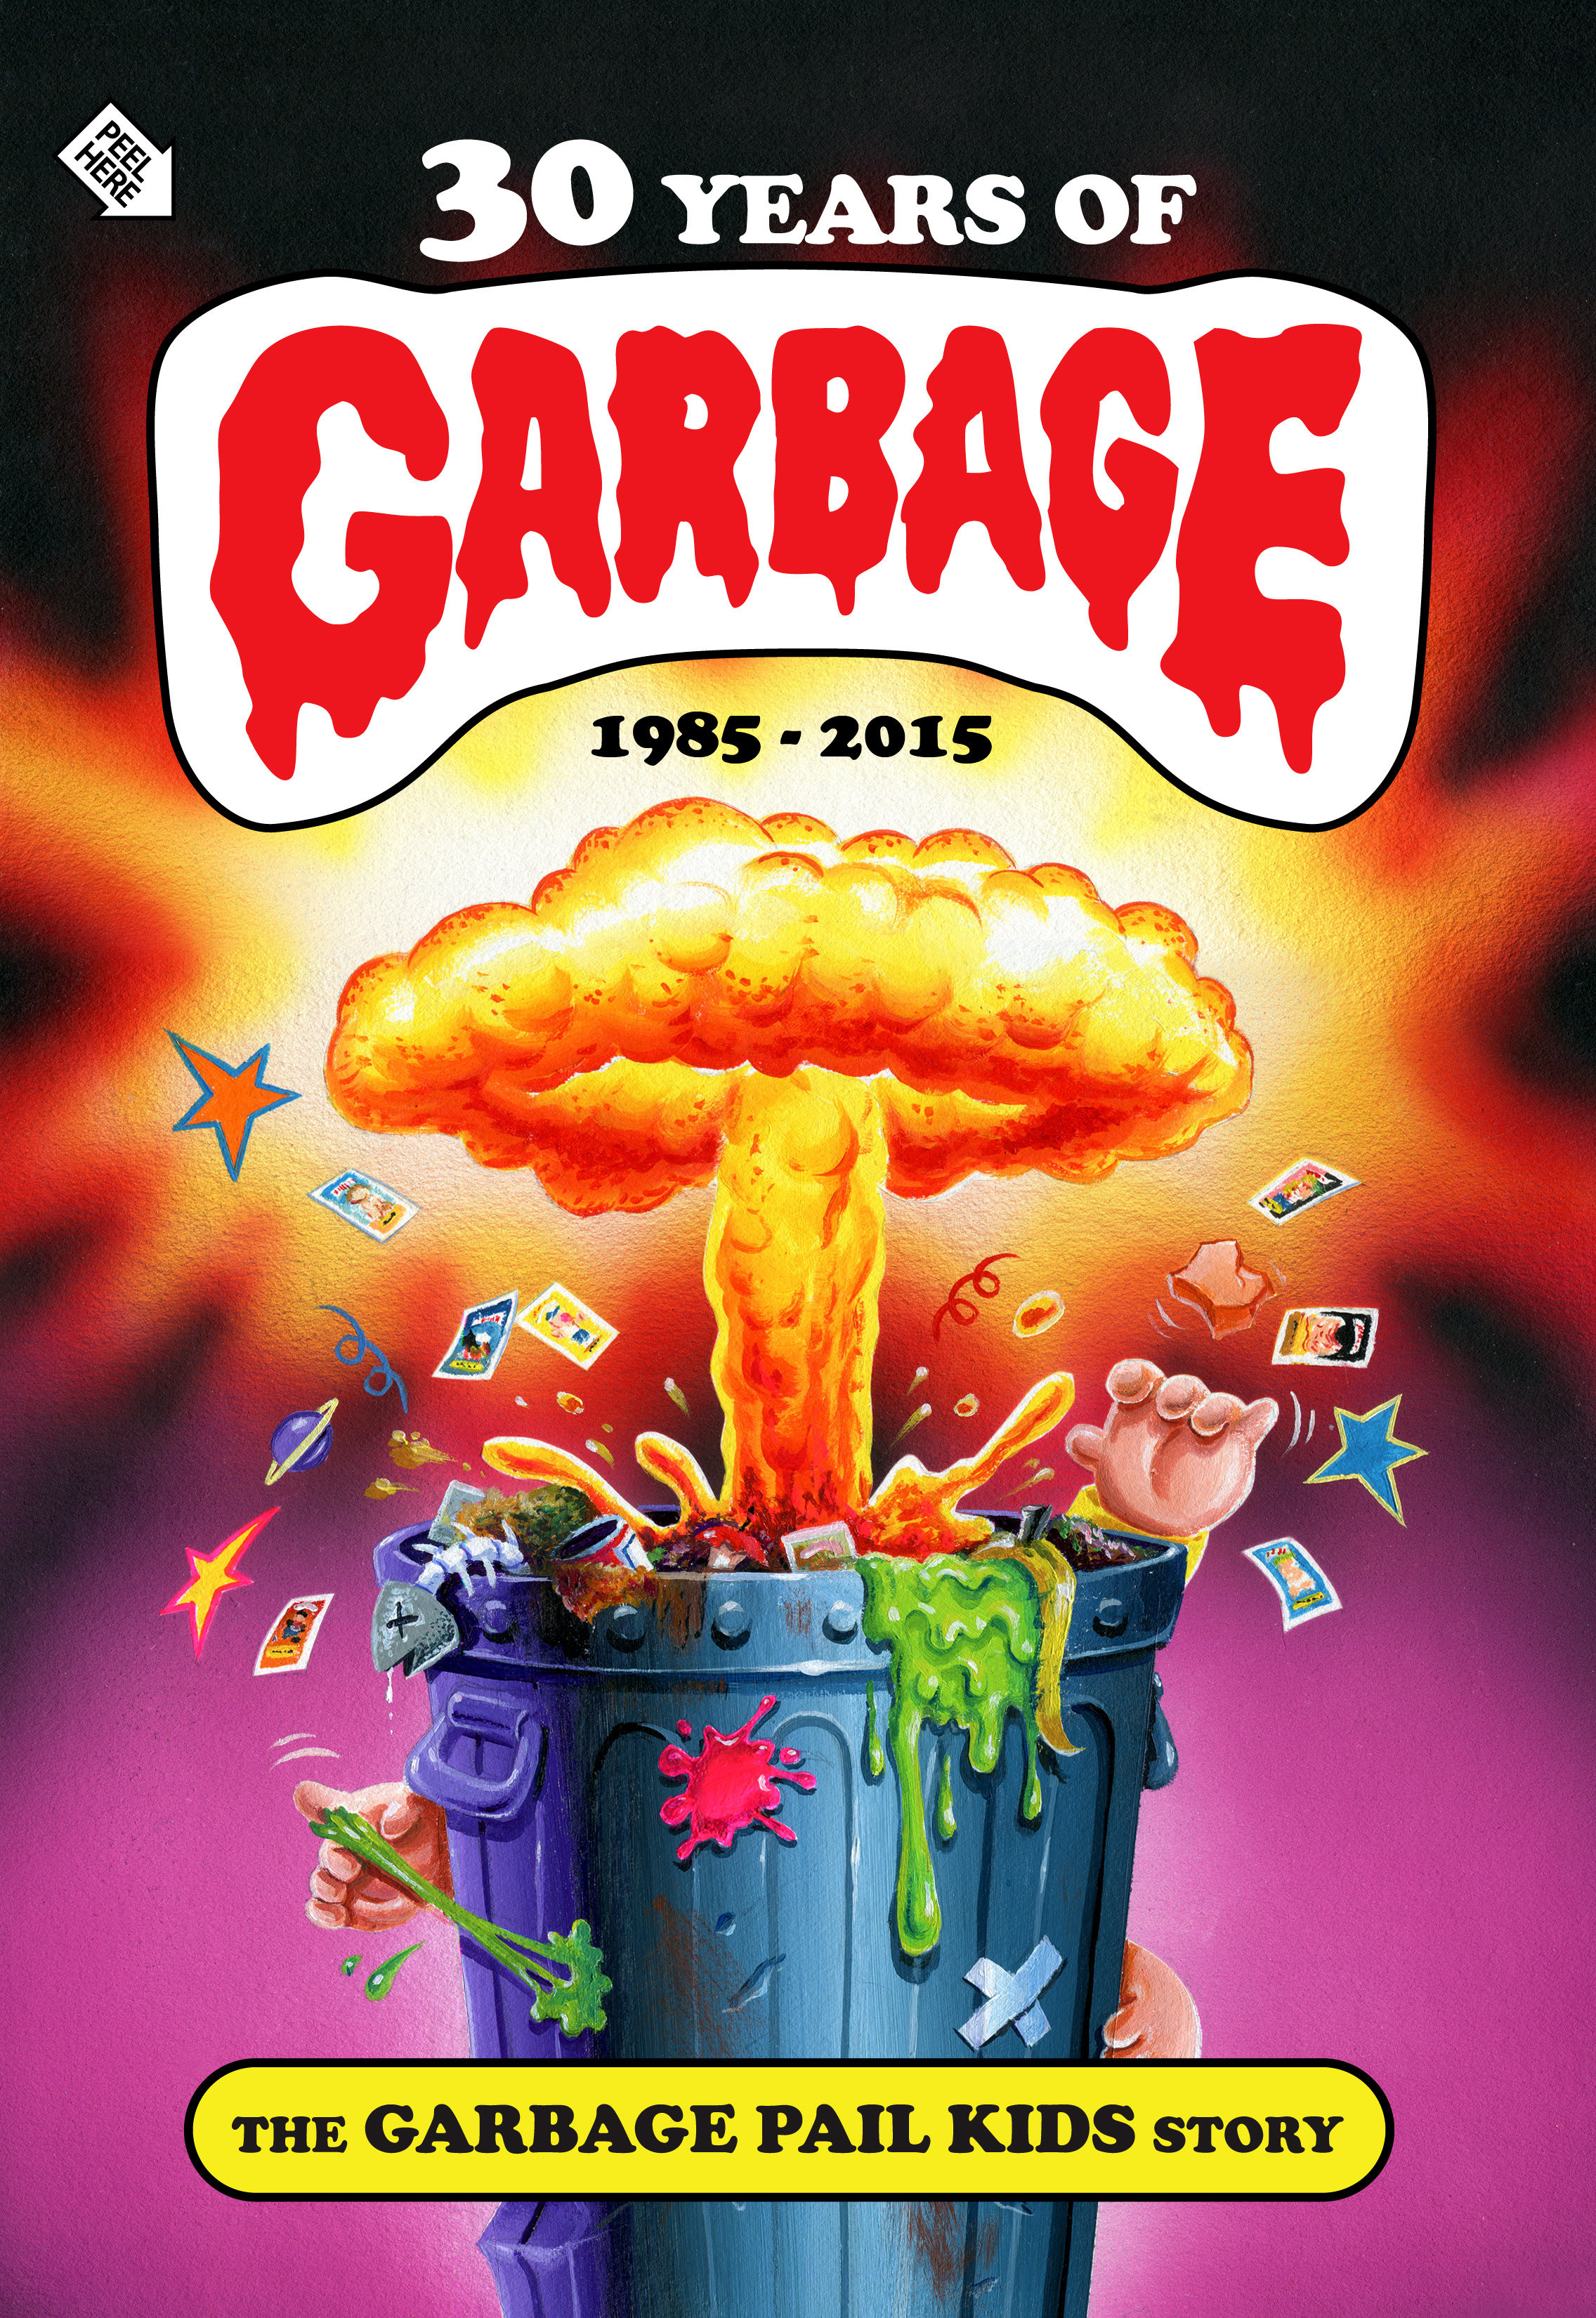 30 Years of Garbage: The Garbage Pail Kids Story (2017) Screenshot 2 